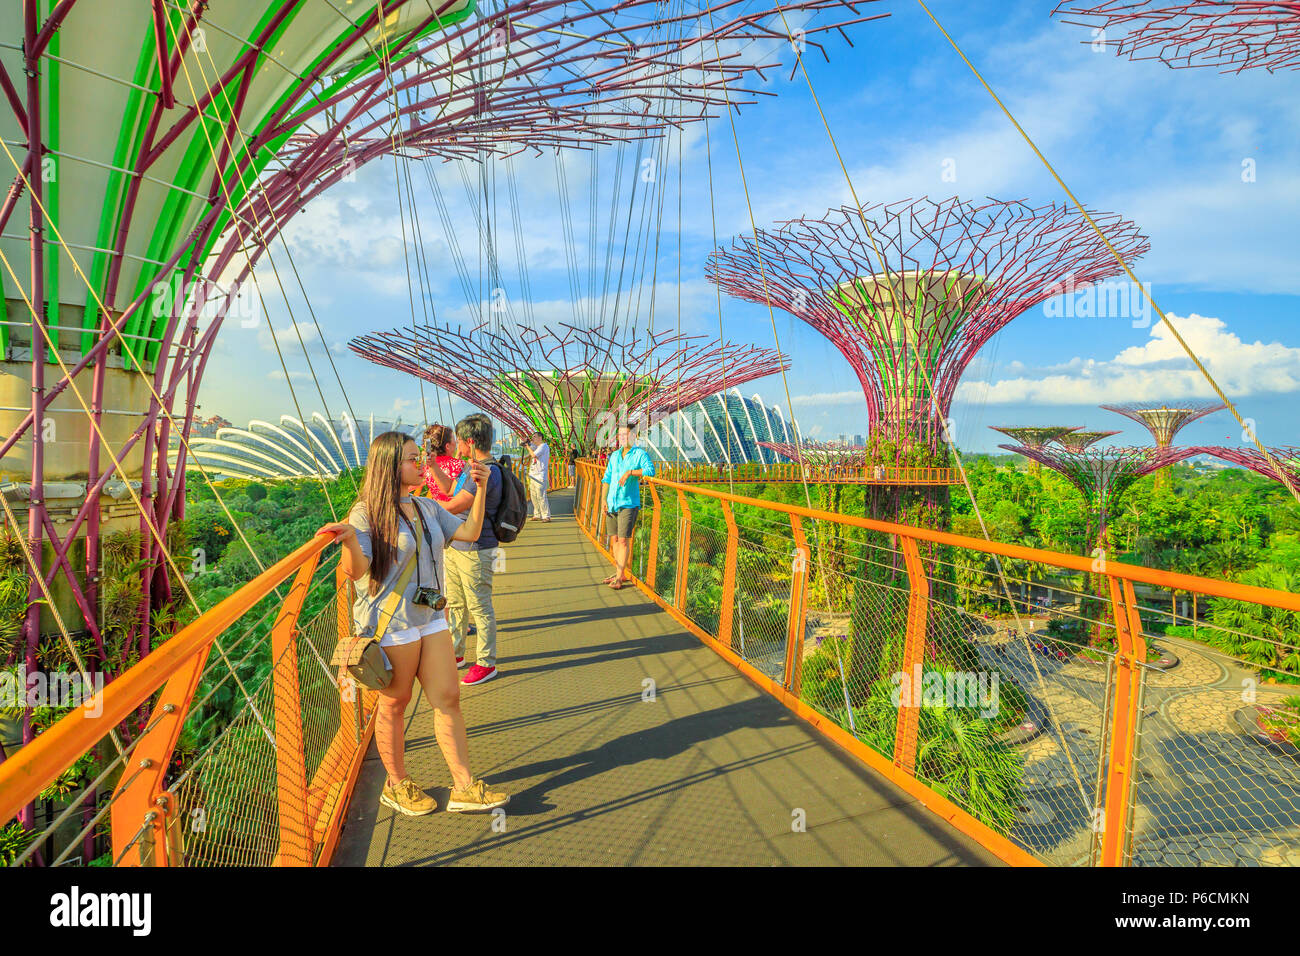 Singapour - le 29 avril 2018 : tourisme asiatique selfies prend avec smart phone en marchant sur une passerelle ou d'OCBC Skyway de Supertree Grove dans les jardins de la baie, la Marina Bay à Singapour. Banque D'Images